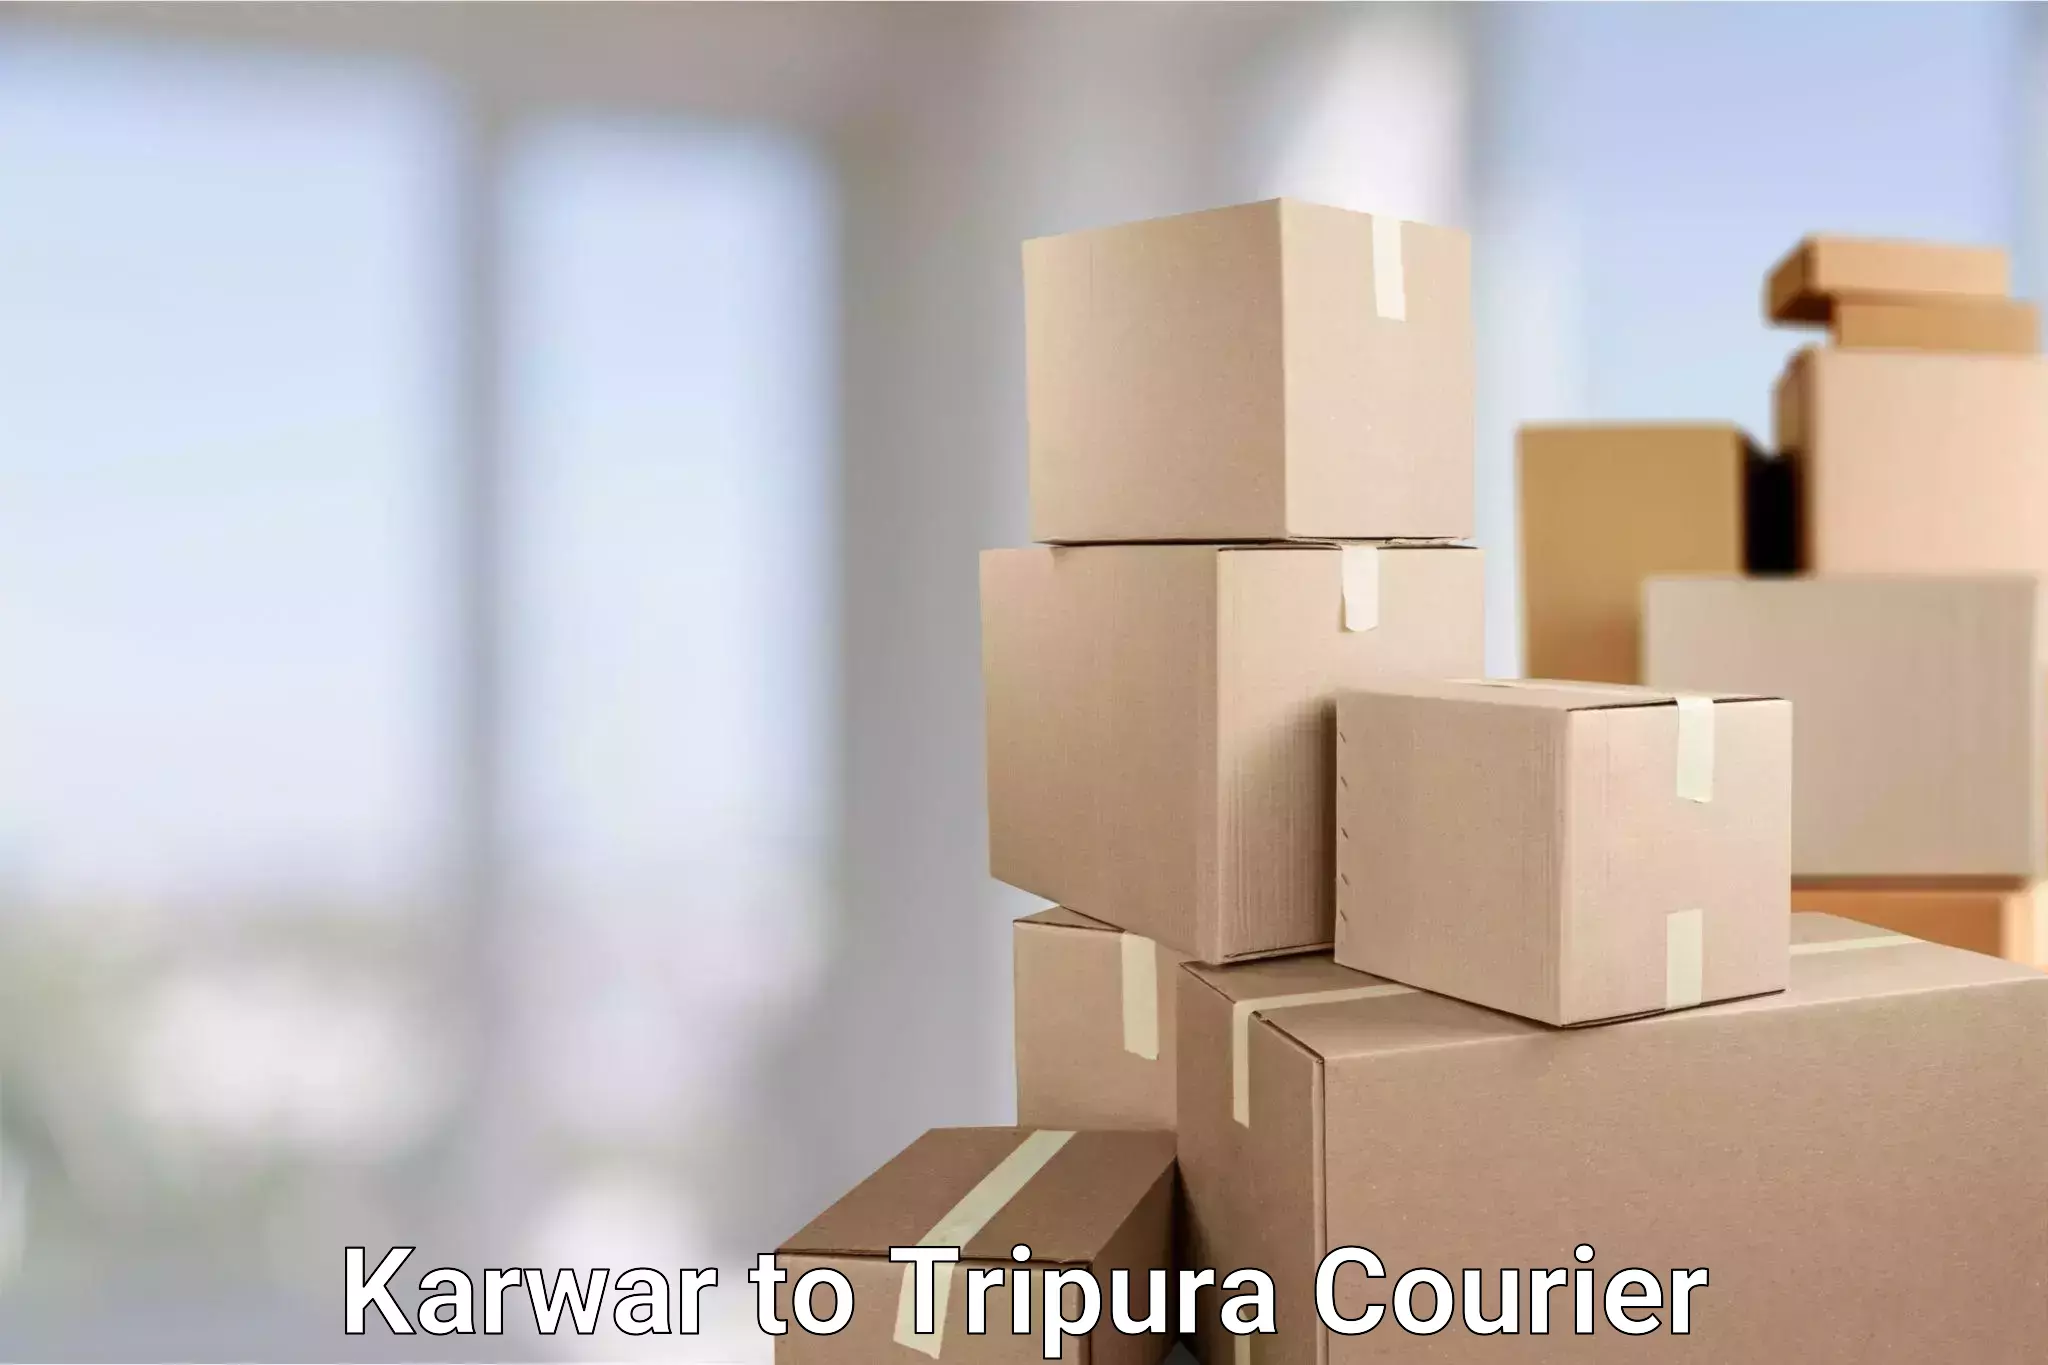 Courier service comparison Karwar to IIIT Agartala